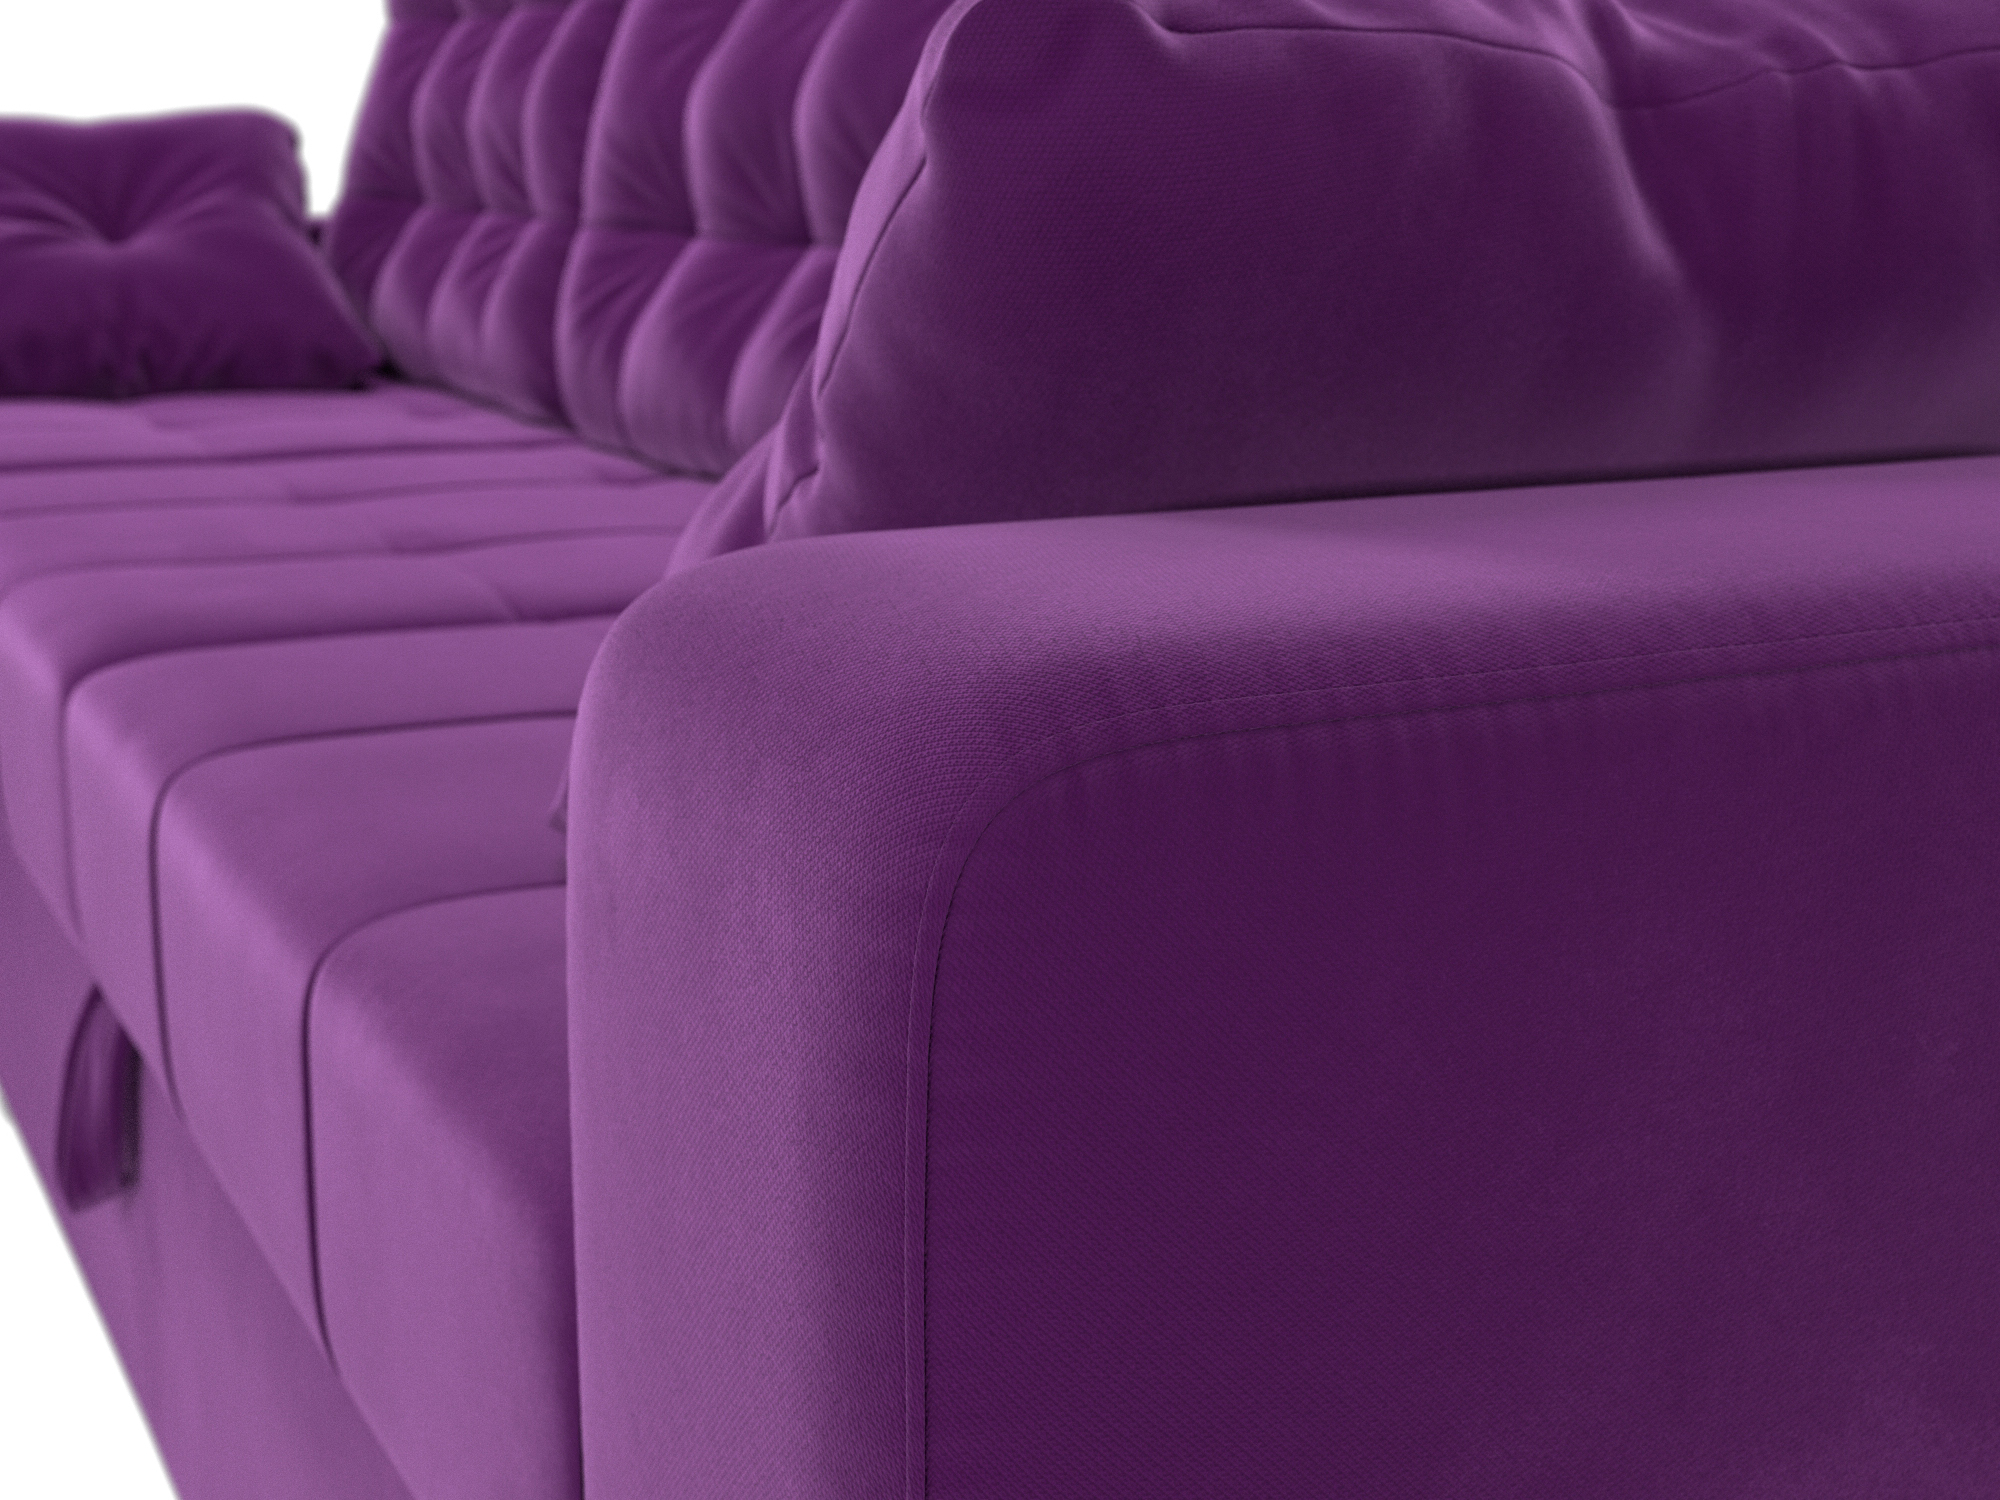 Угловой диван Камелот левый угол (Фиолетовый)